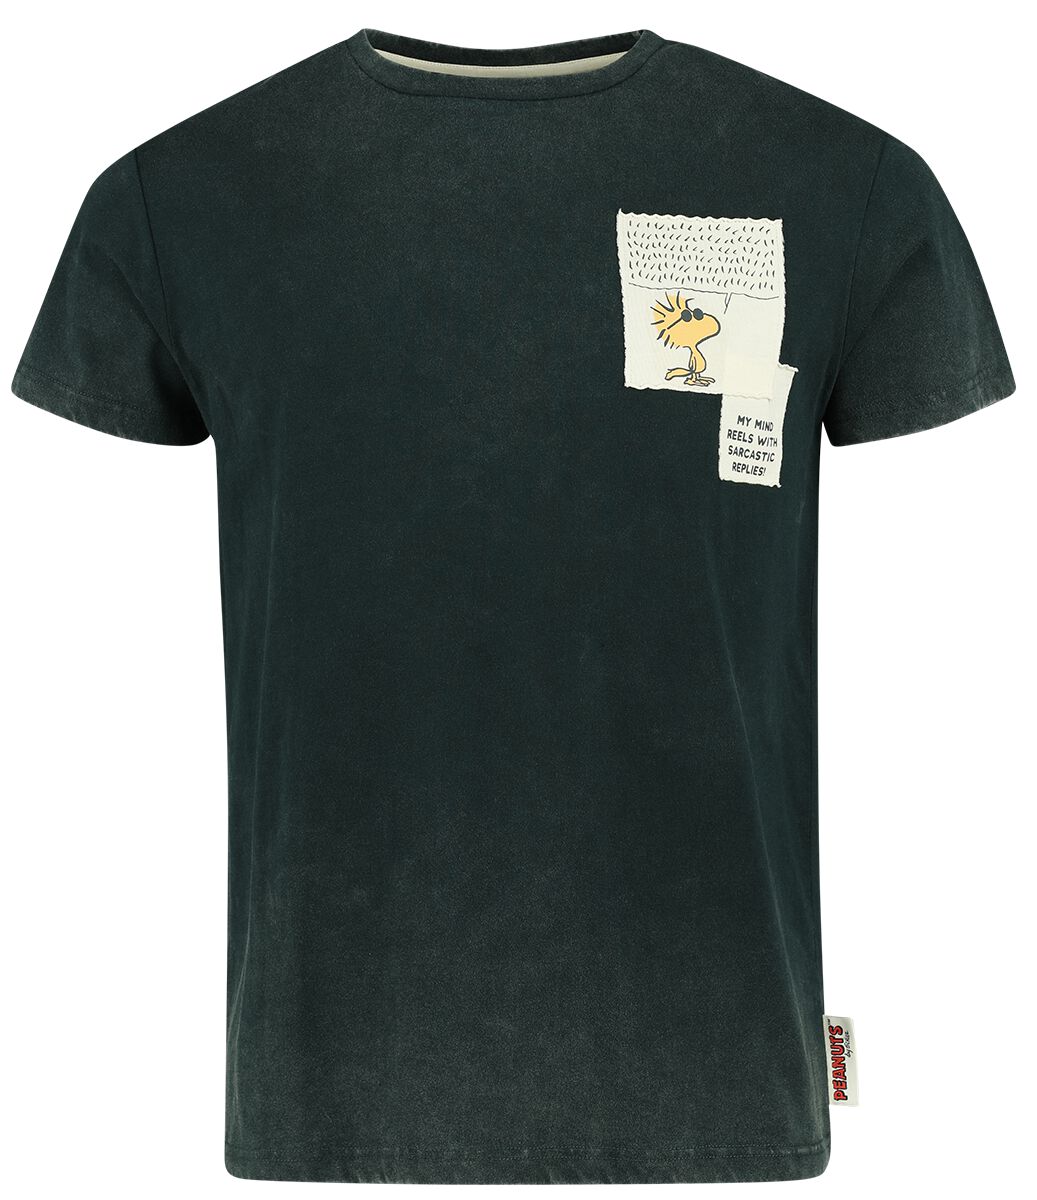 Peanuts T-Shirt - The Sarcasm Society - S bis XXL - für Männer - Größe M - dunkelgrün  - EMP exklusives Merchandise!